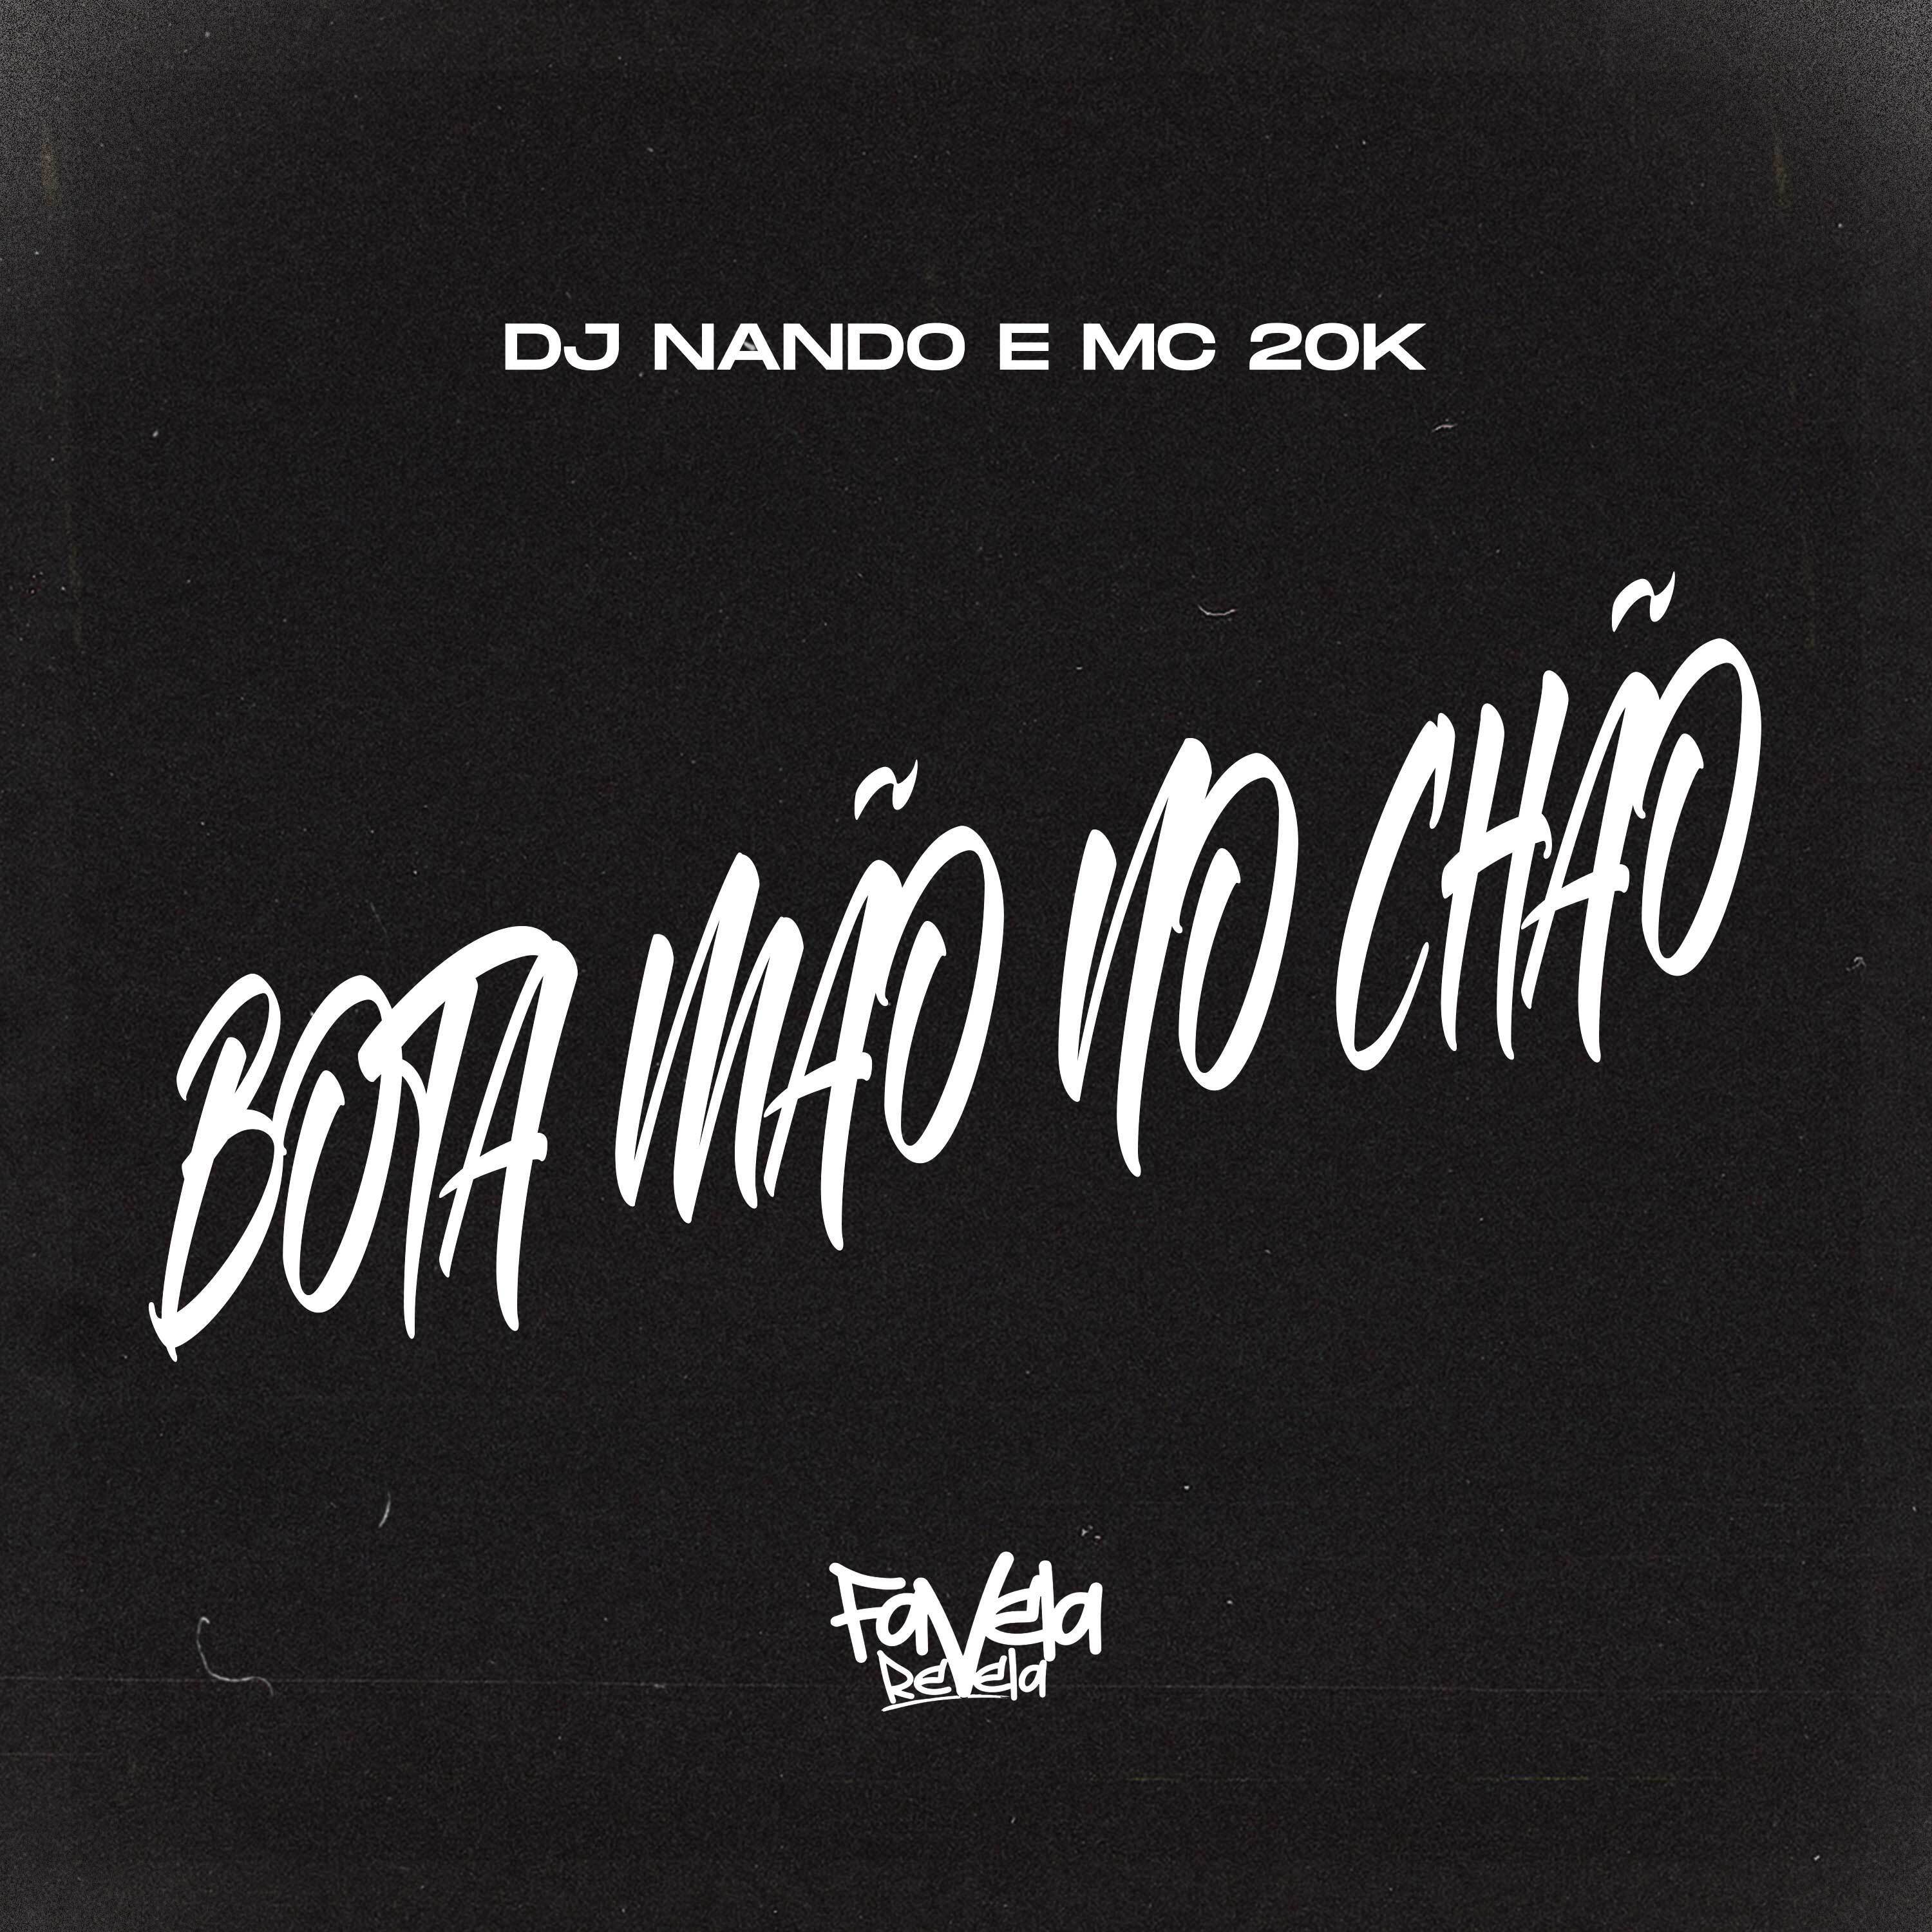 DJ Nando - Bota Mão no Chão